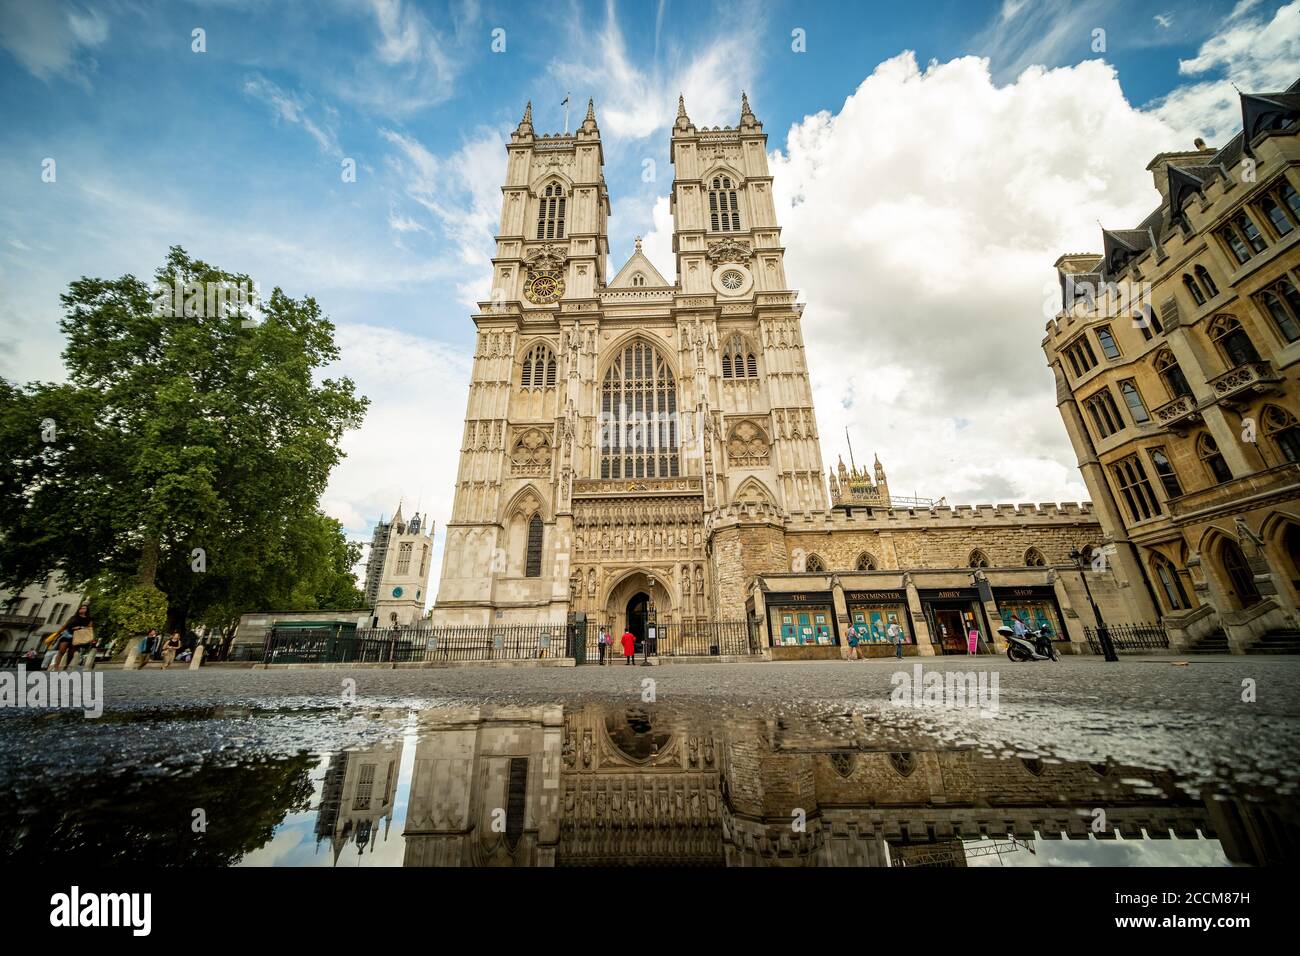 Londres- Westminster Abbey, famoso monumento británico y gótico de Londres Foto de stock